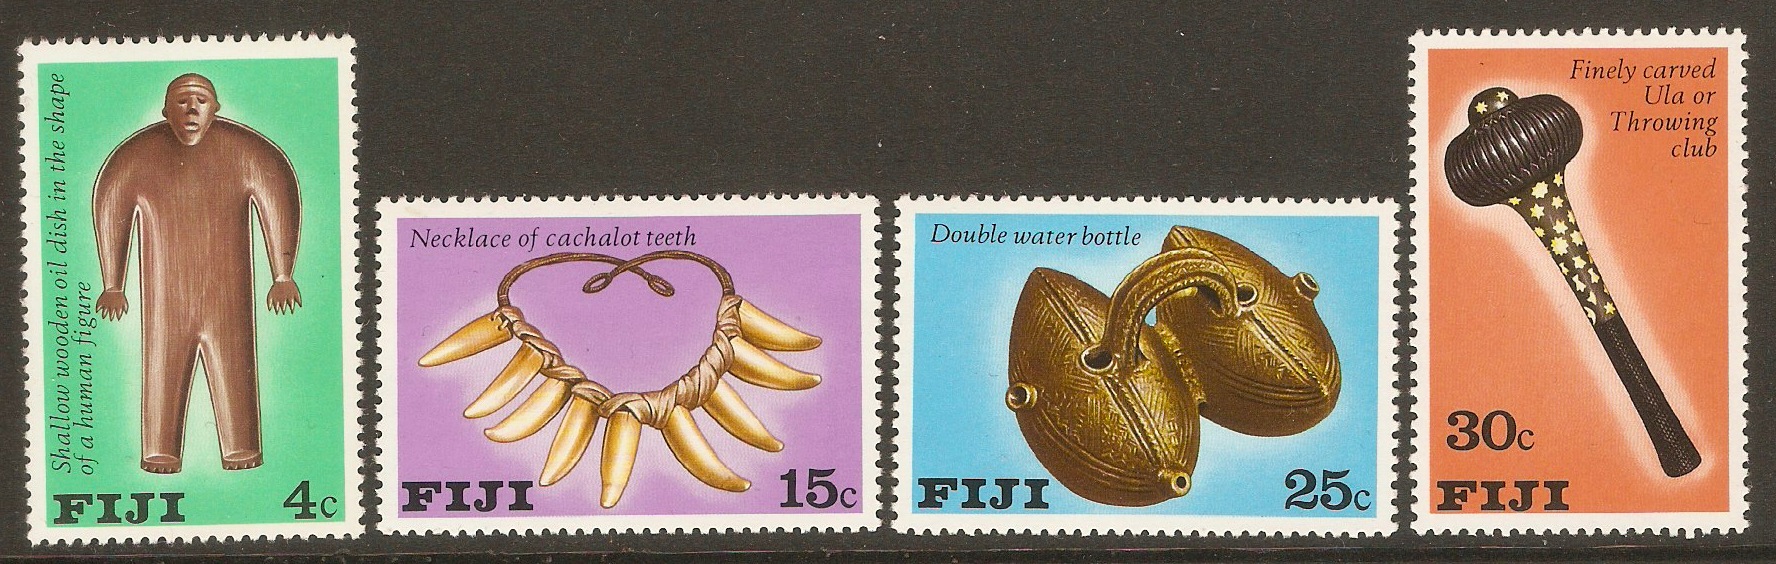 Fiji 1978 Fijian Artifacts set. SG556-SG559.